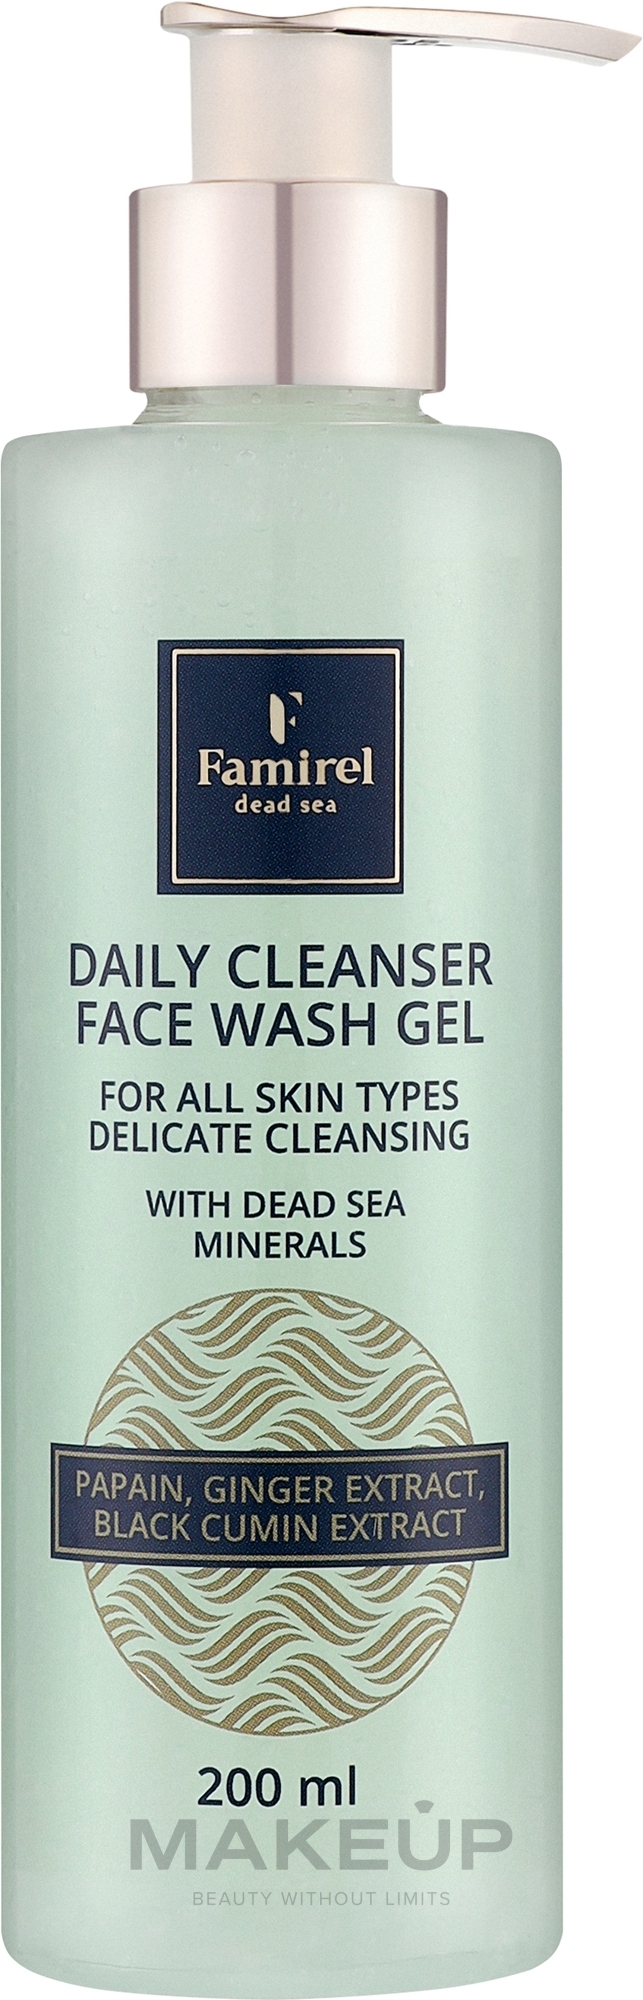 Гель для умывания всех типов кожи с папаином - Famirel Daily Cleanser Face Wash Gel  — фото 200ml